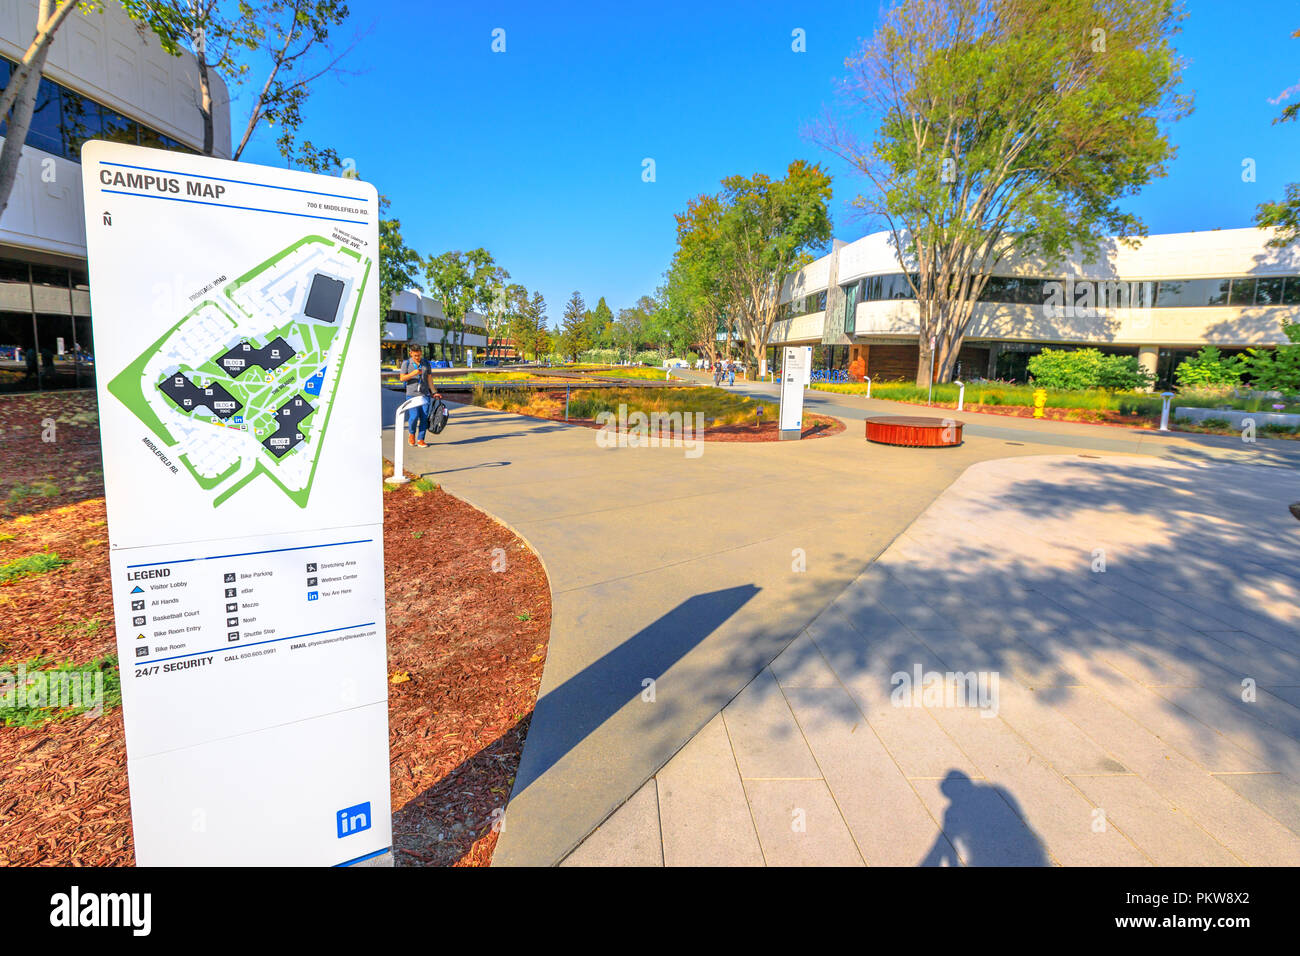 Mountain View, Kalifornien, Vereinigte Staaten - 13 August 2018: Neue Linkedin Corp Campus Map im Silicon Valley. Linkedin ist ein Business- und beschäftigungsorientierte professionelles Social Network Service. Stockfoto